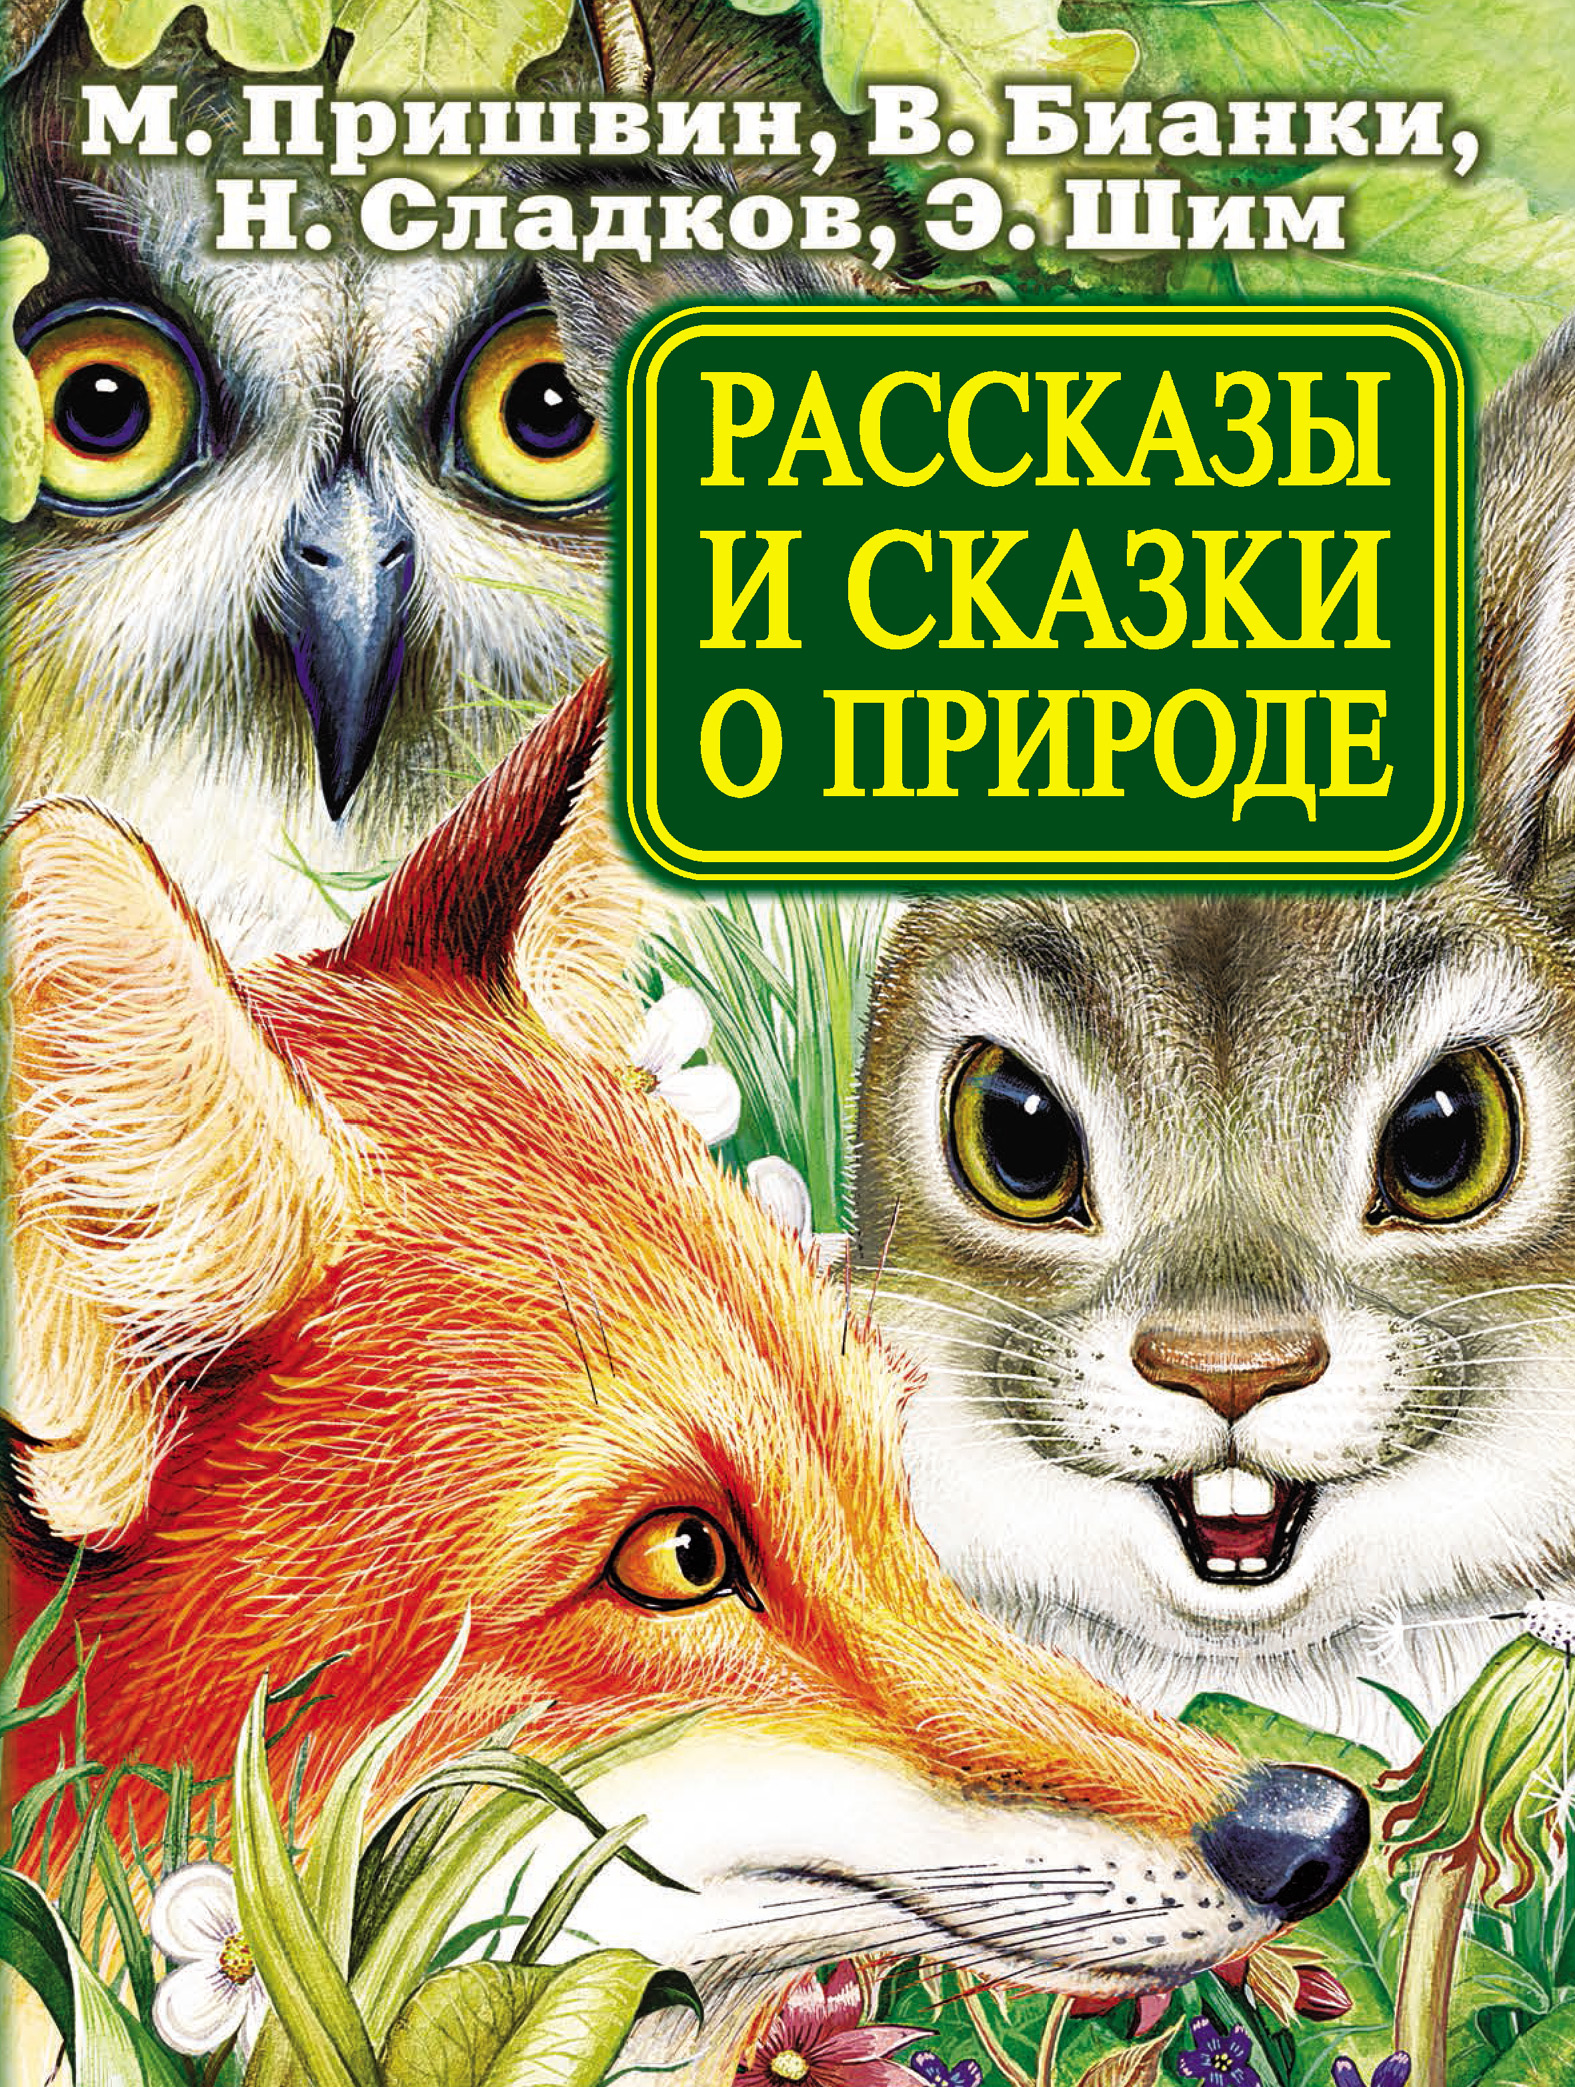 Чтение произведений о животных